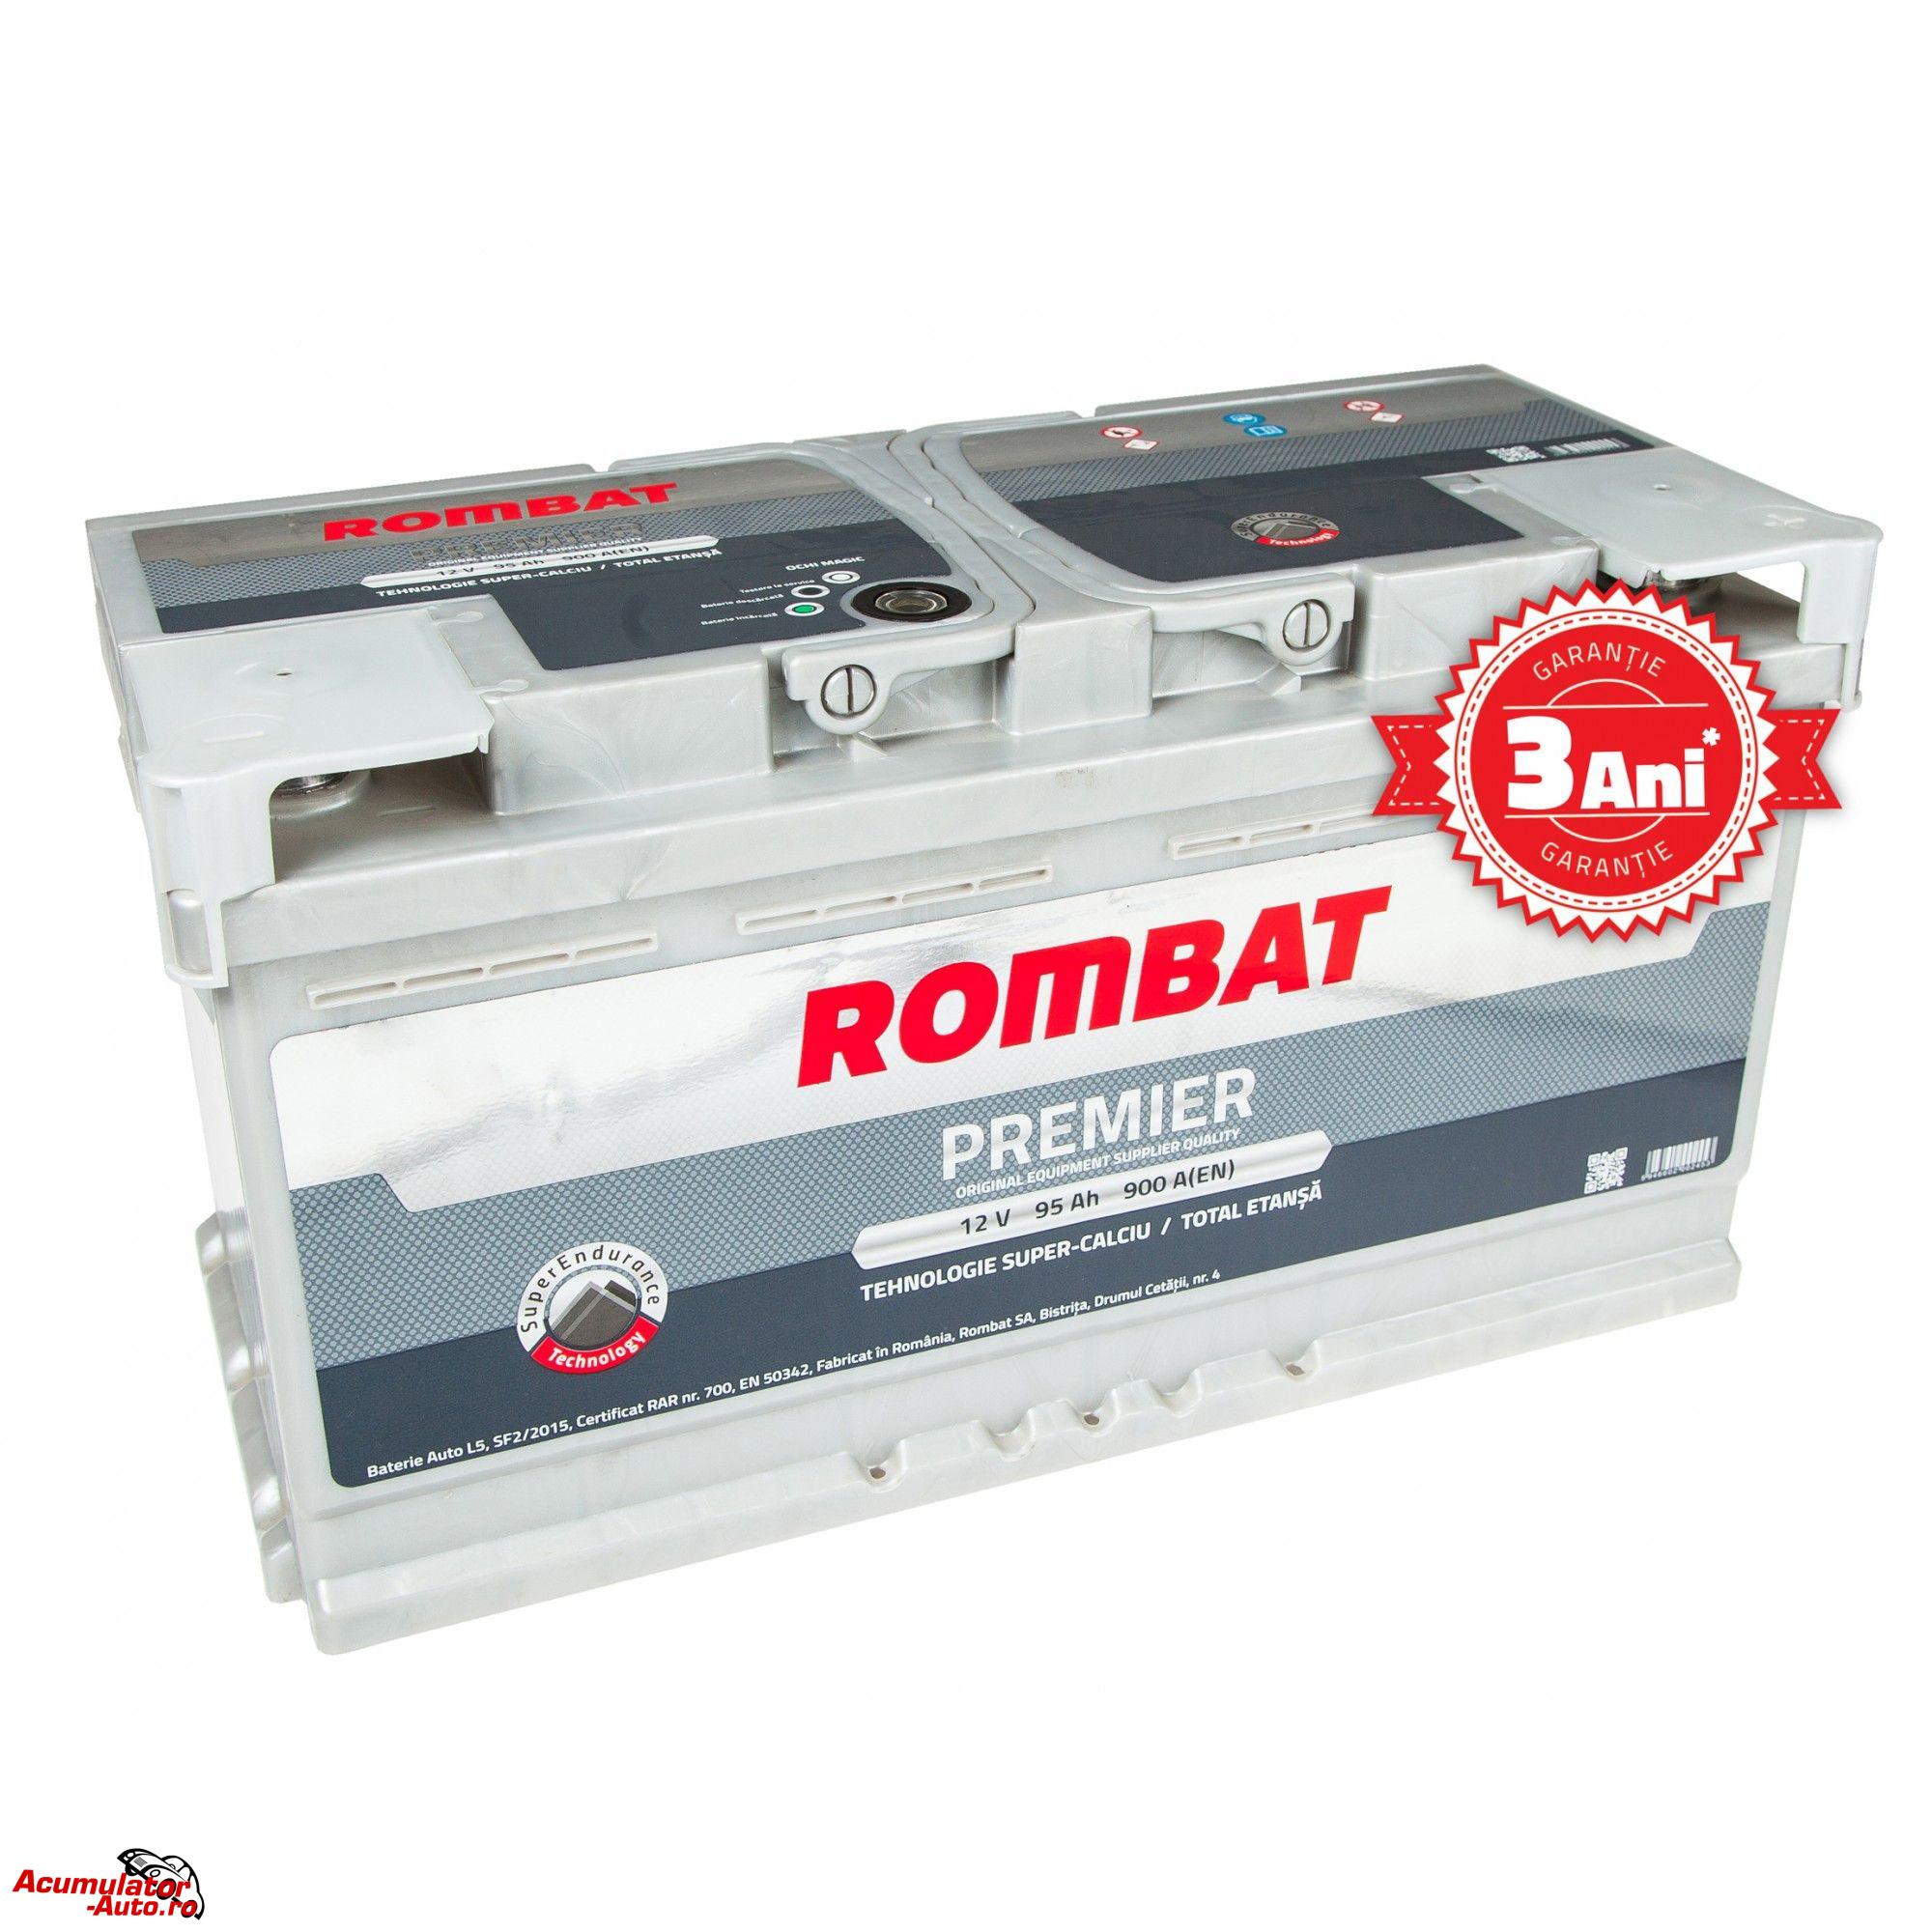 Acumulator auto ROMBAT Premier 95AH